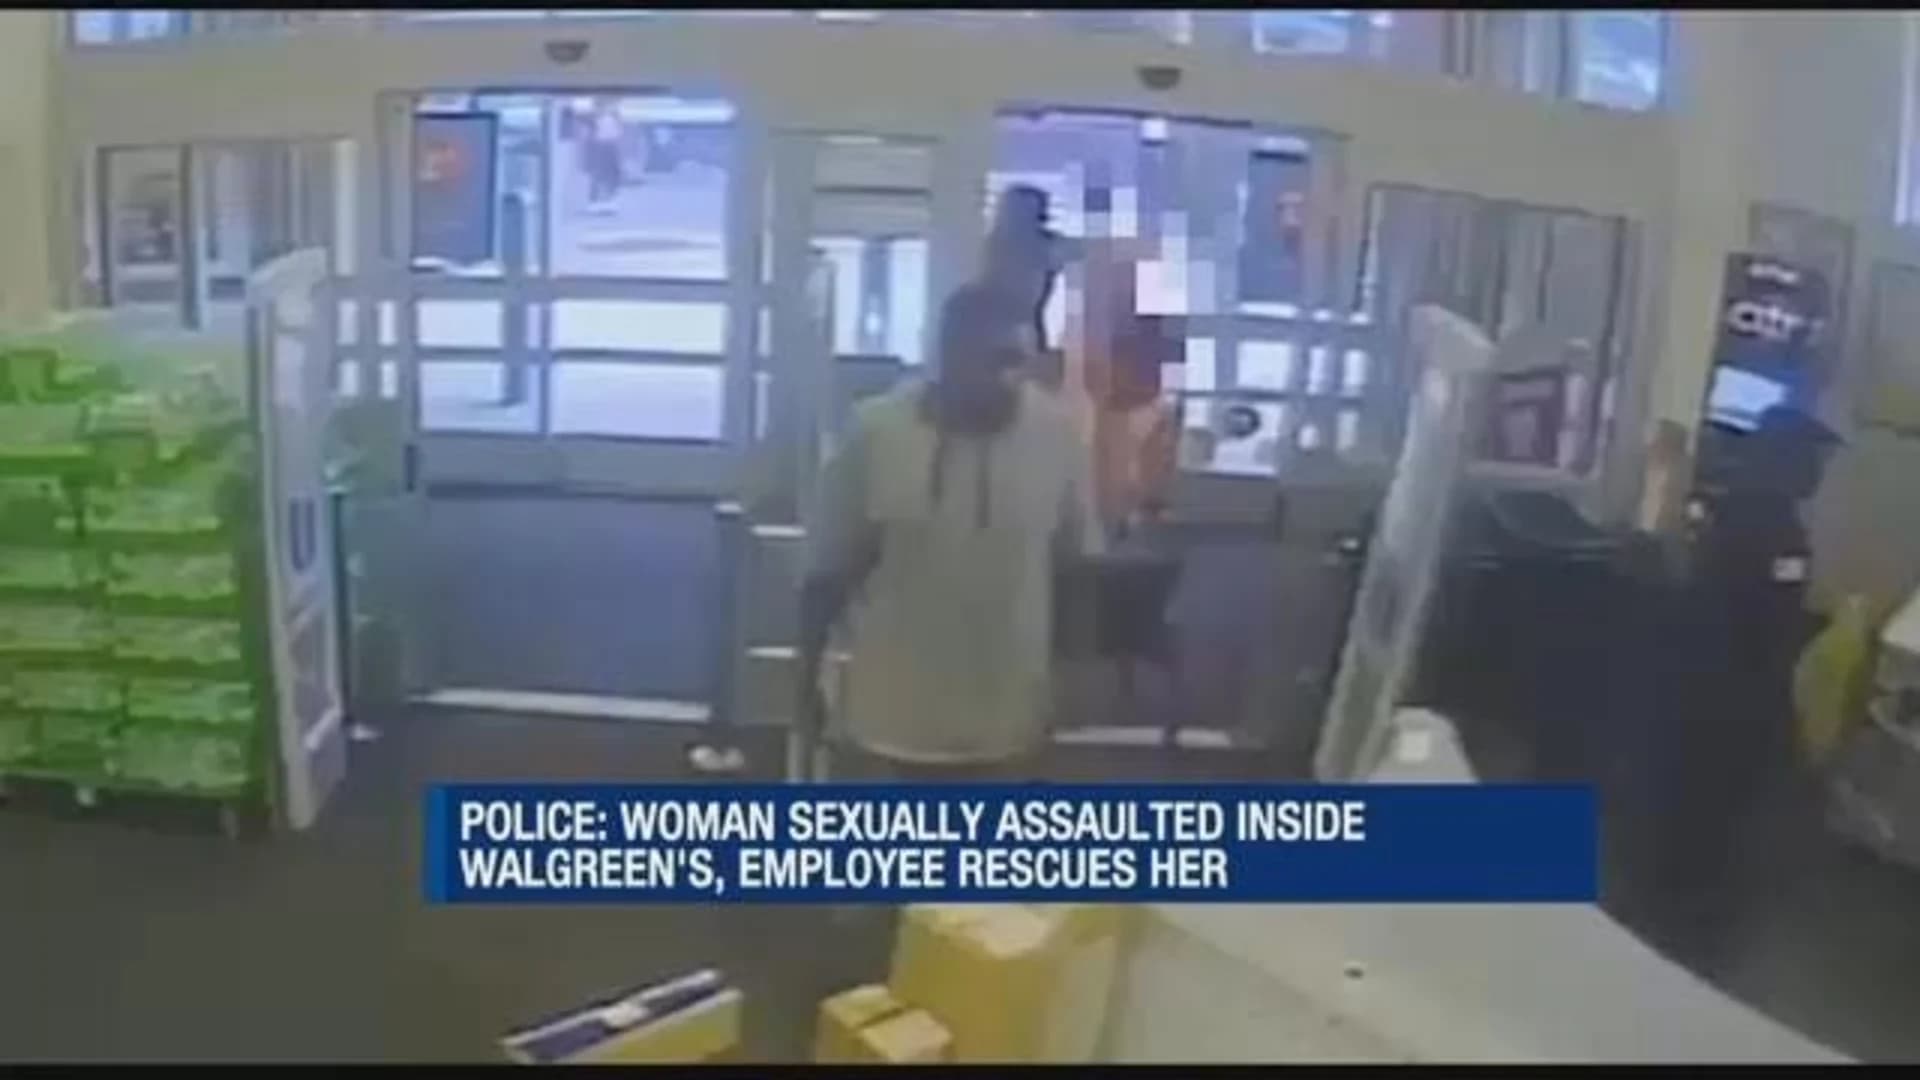 Walgreens employee thwarts sex assault inside store